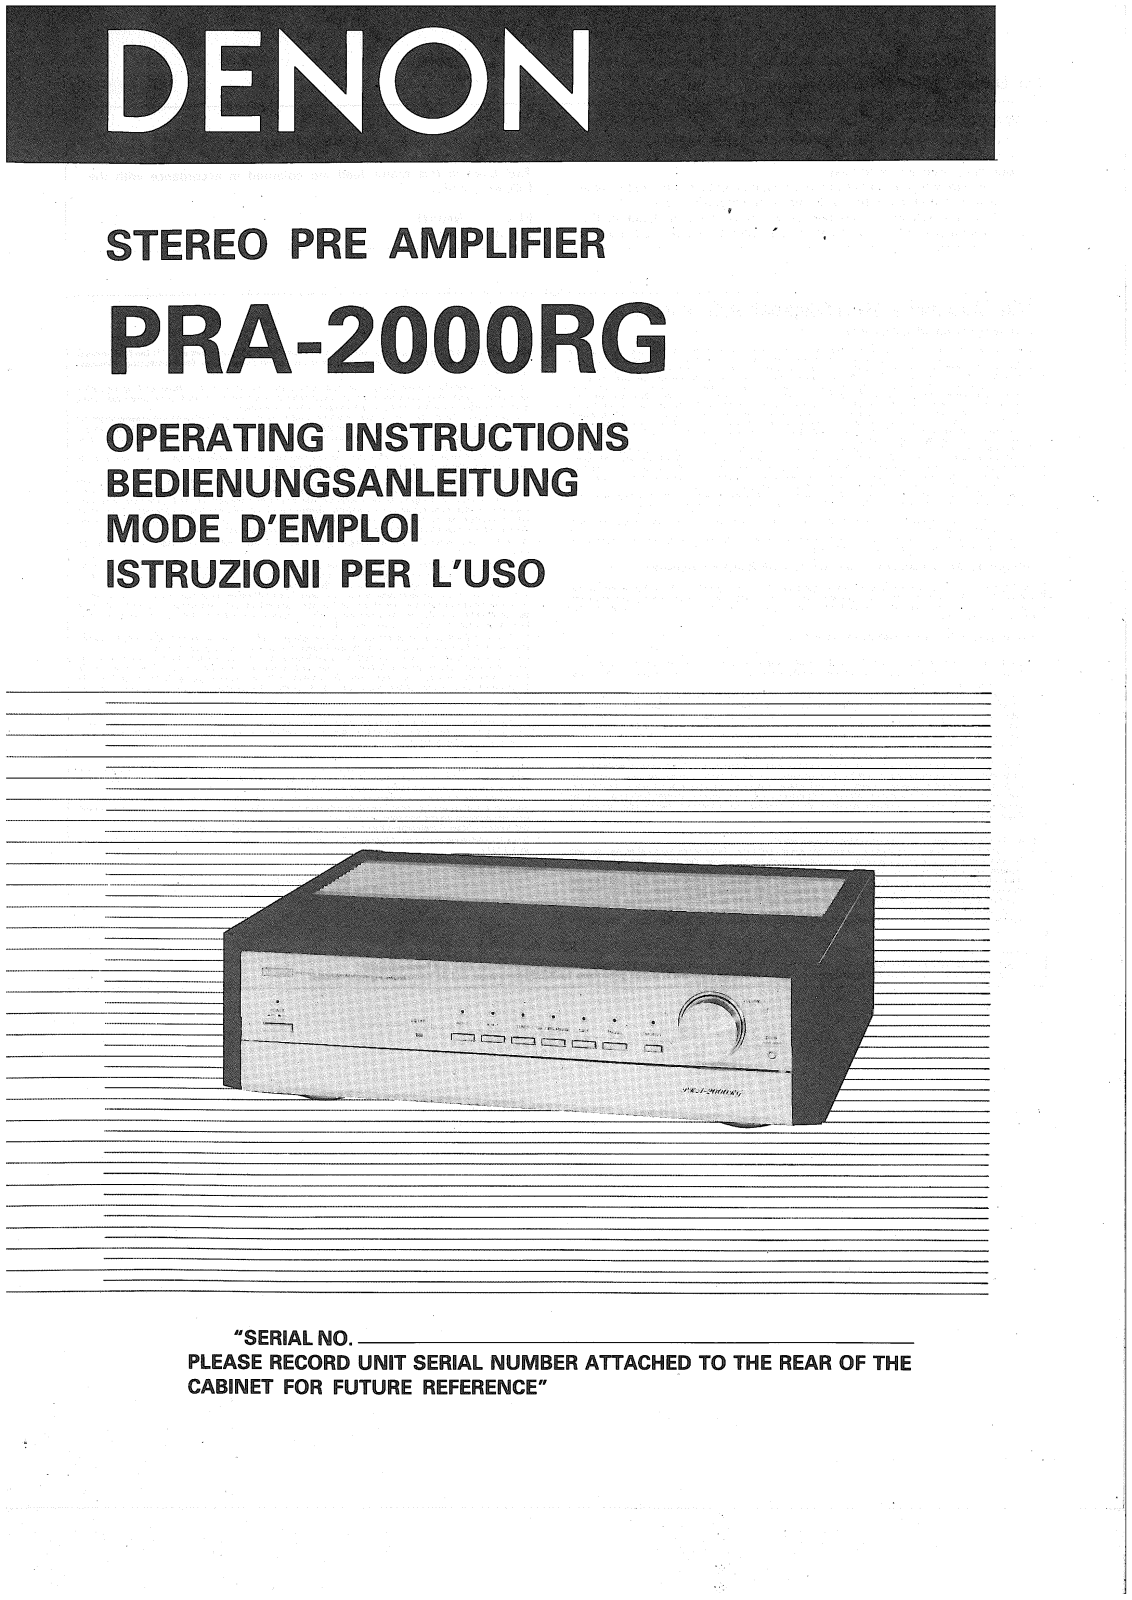 Denon PRA-2000RG Owner's Manual